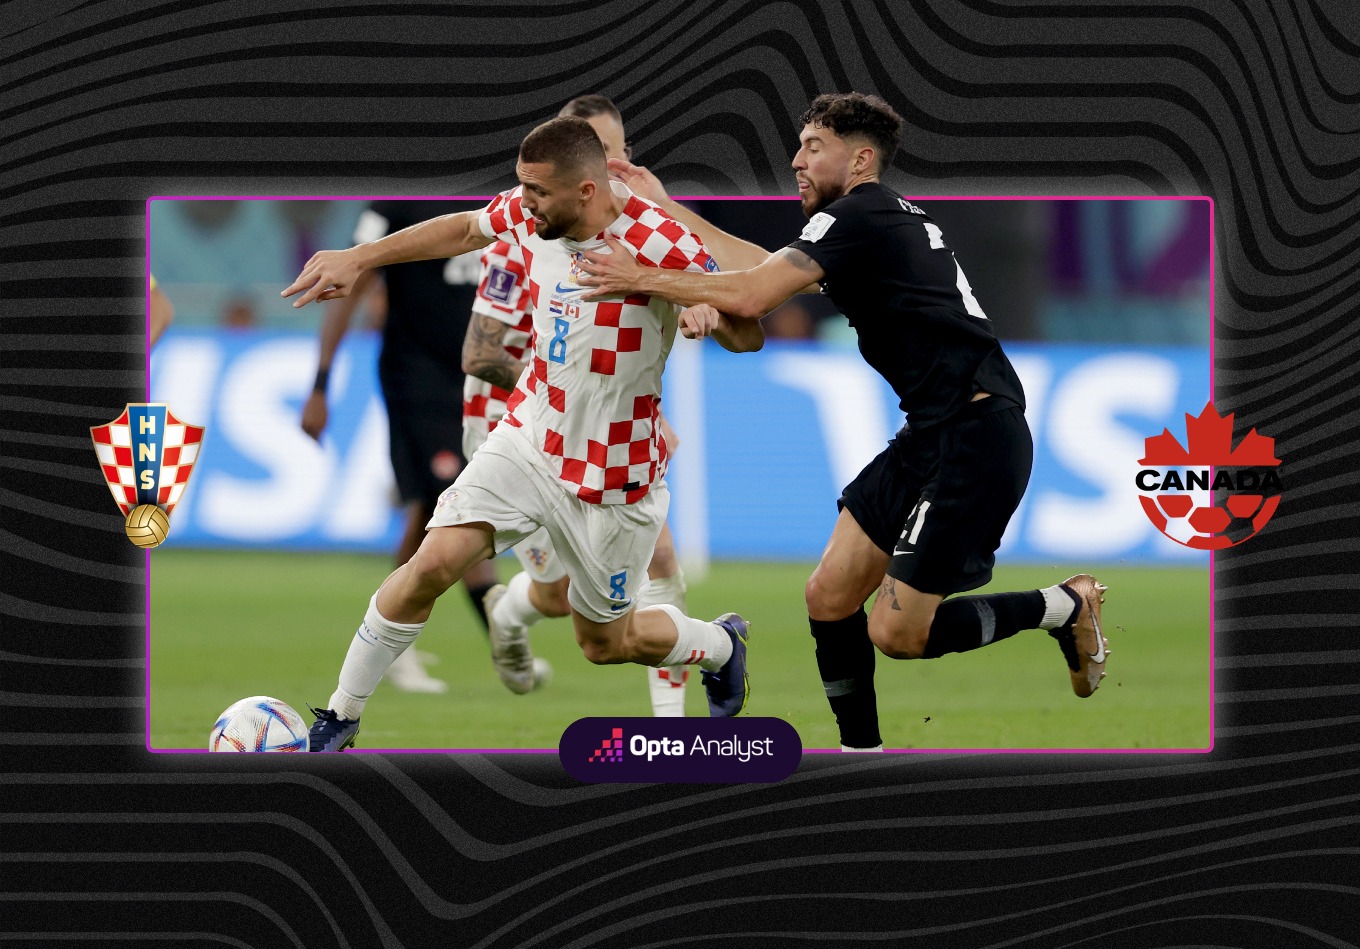 Croatia 4-1 Canada: 2018 Finalists Expose and Eliminate Canada